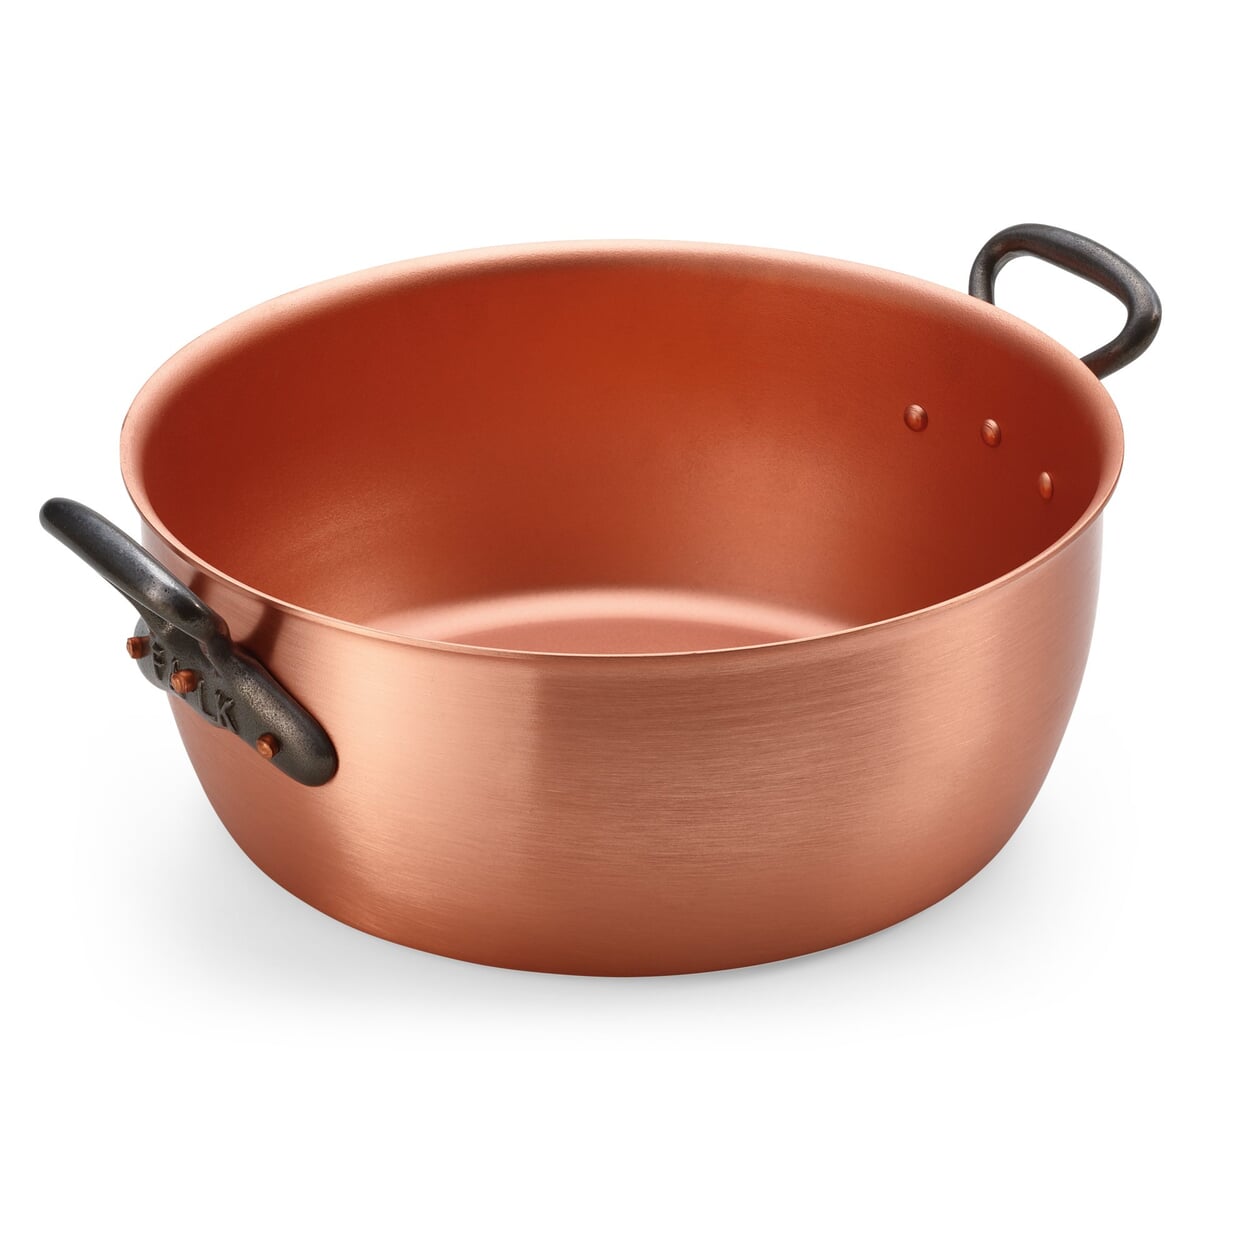 Marmead pot copper